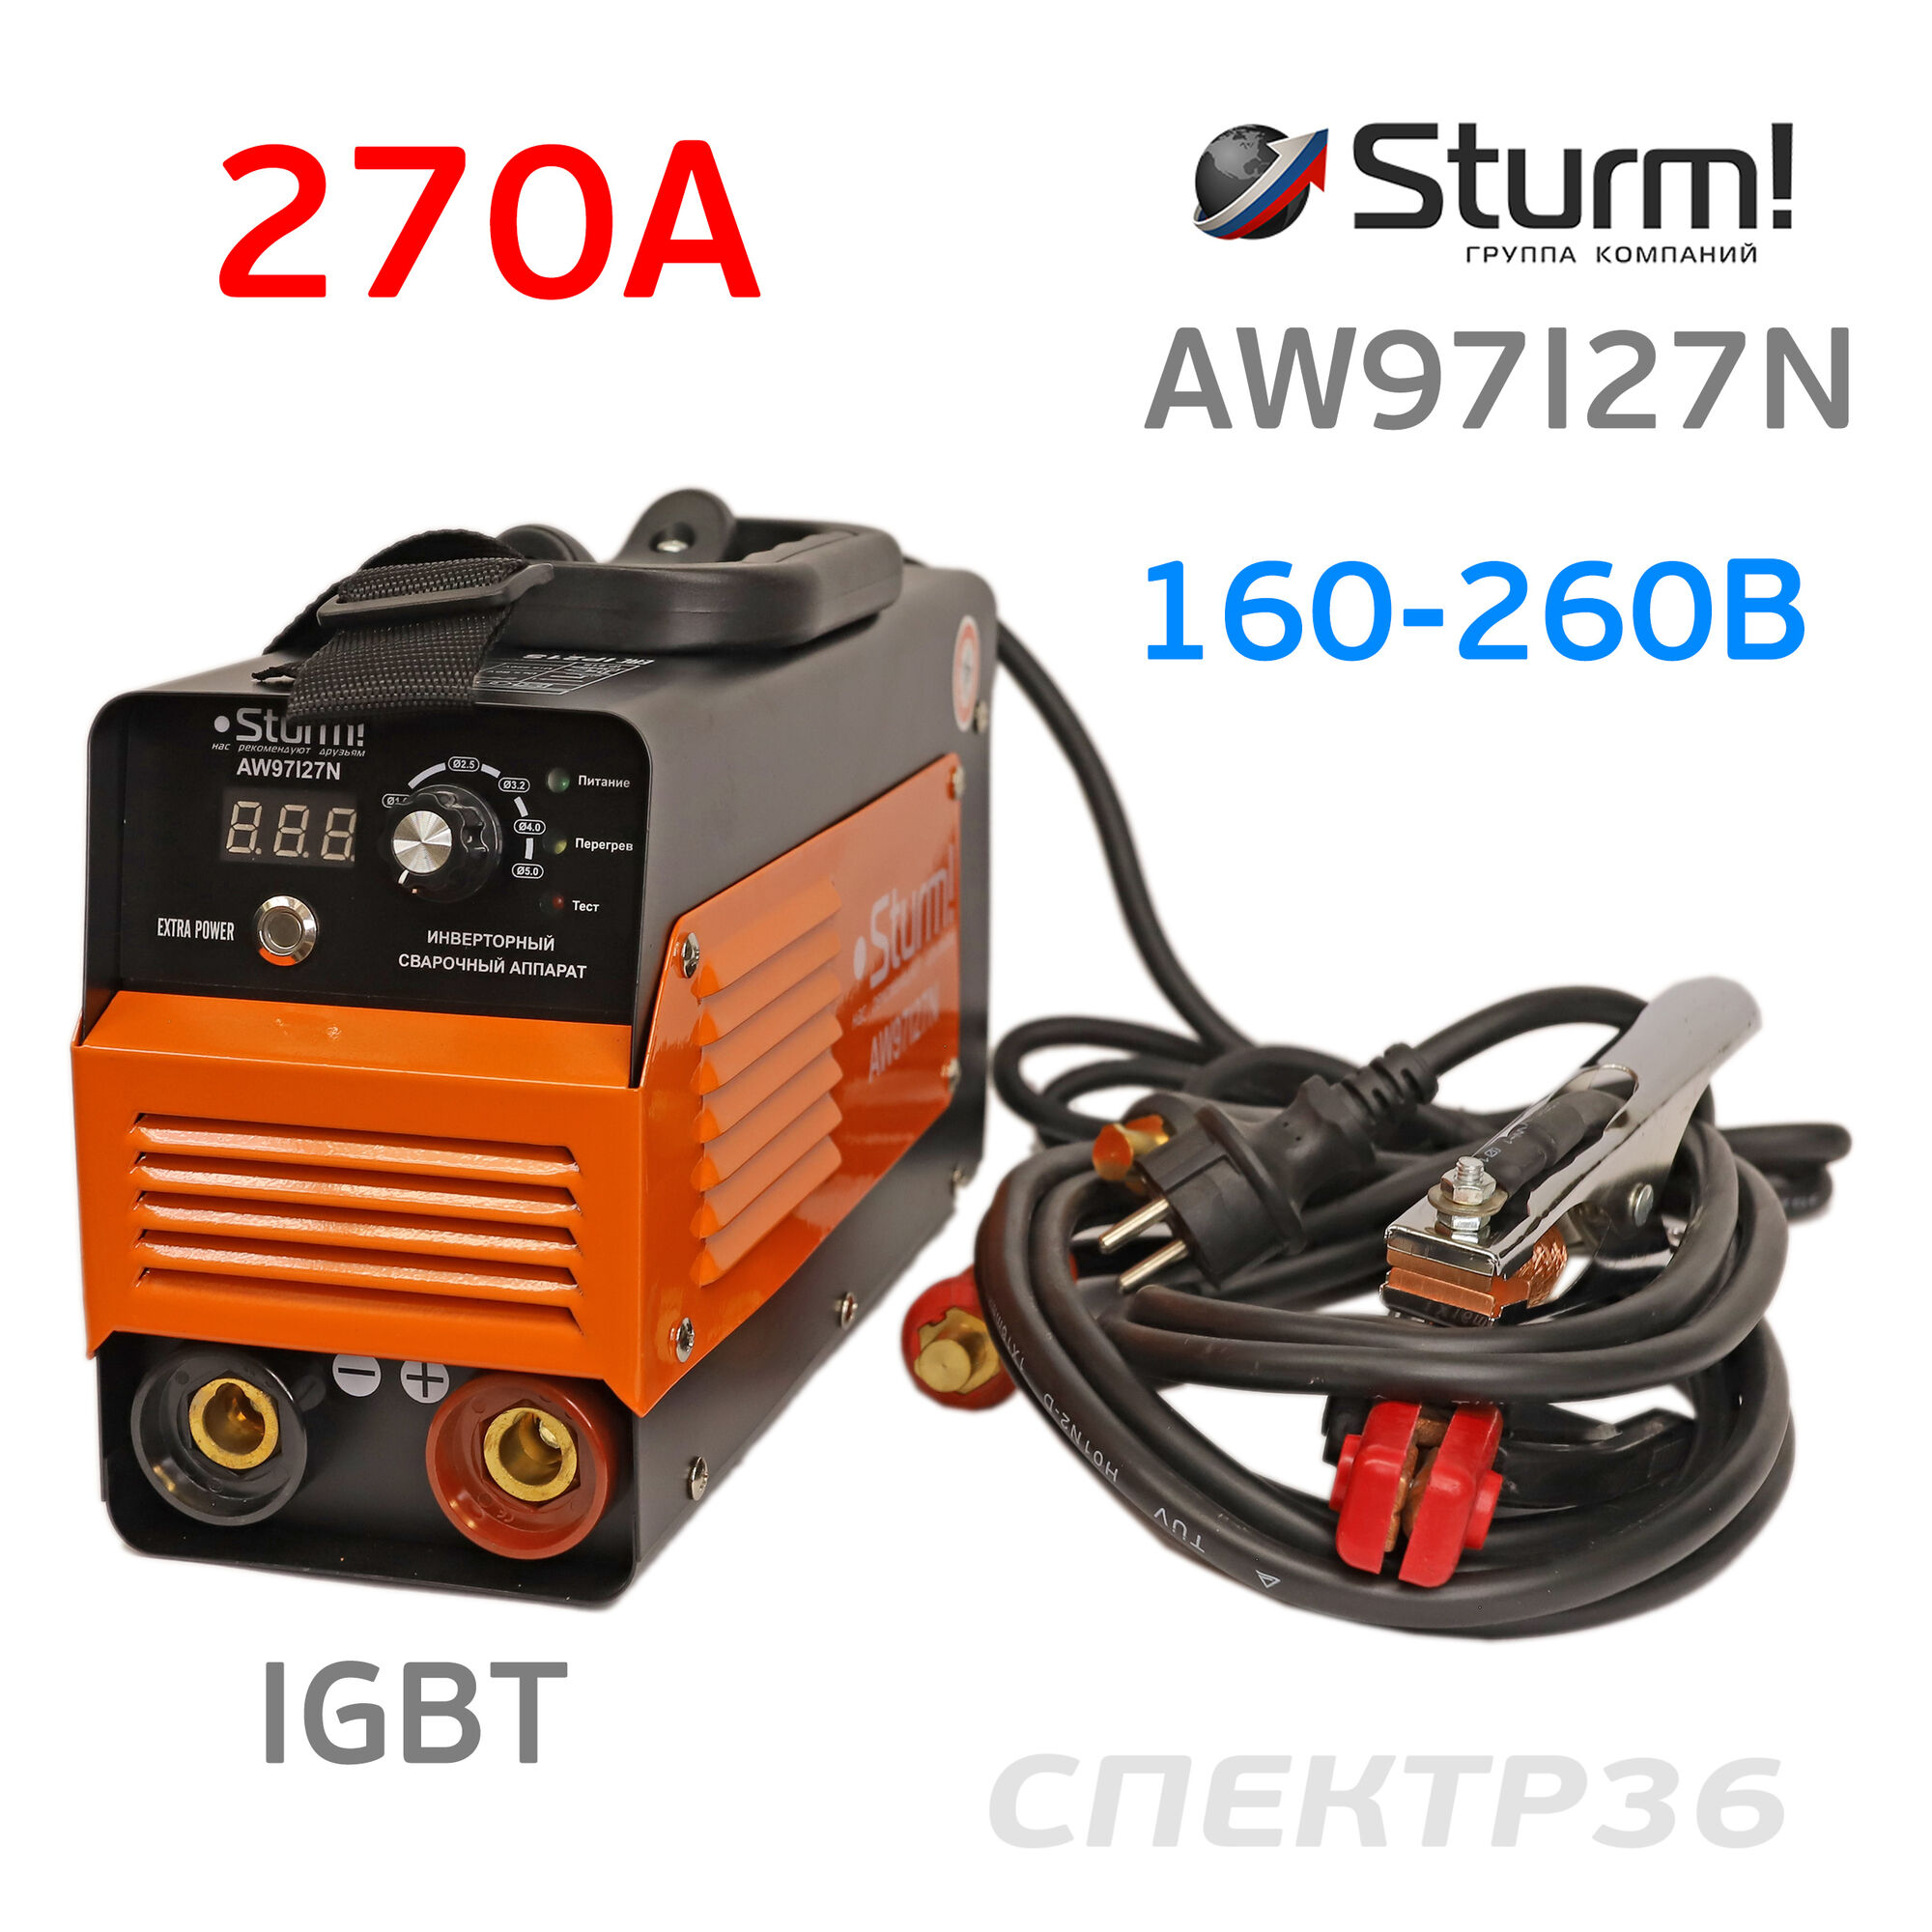 Инвертор Sturm AW97I27N (160-260В, 270 А) IGBT сварочный #1